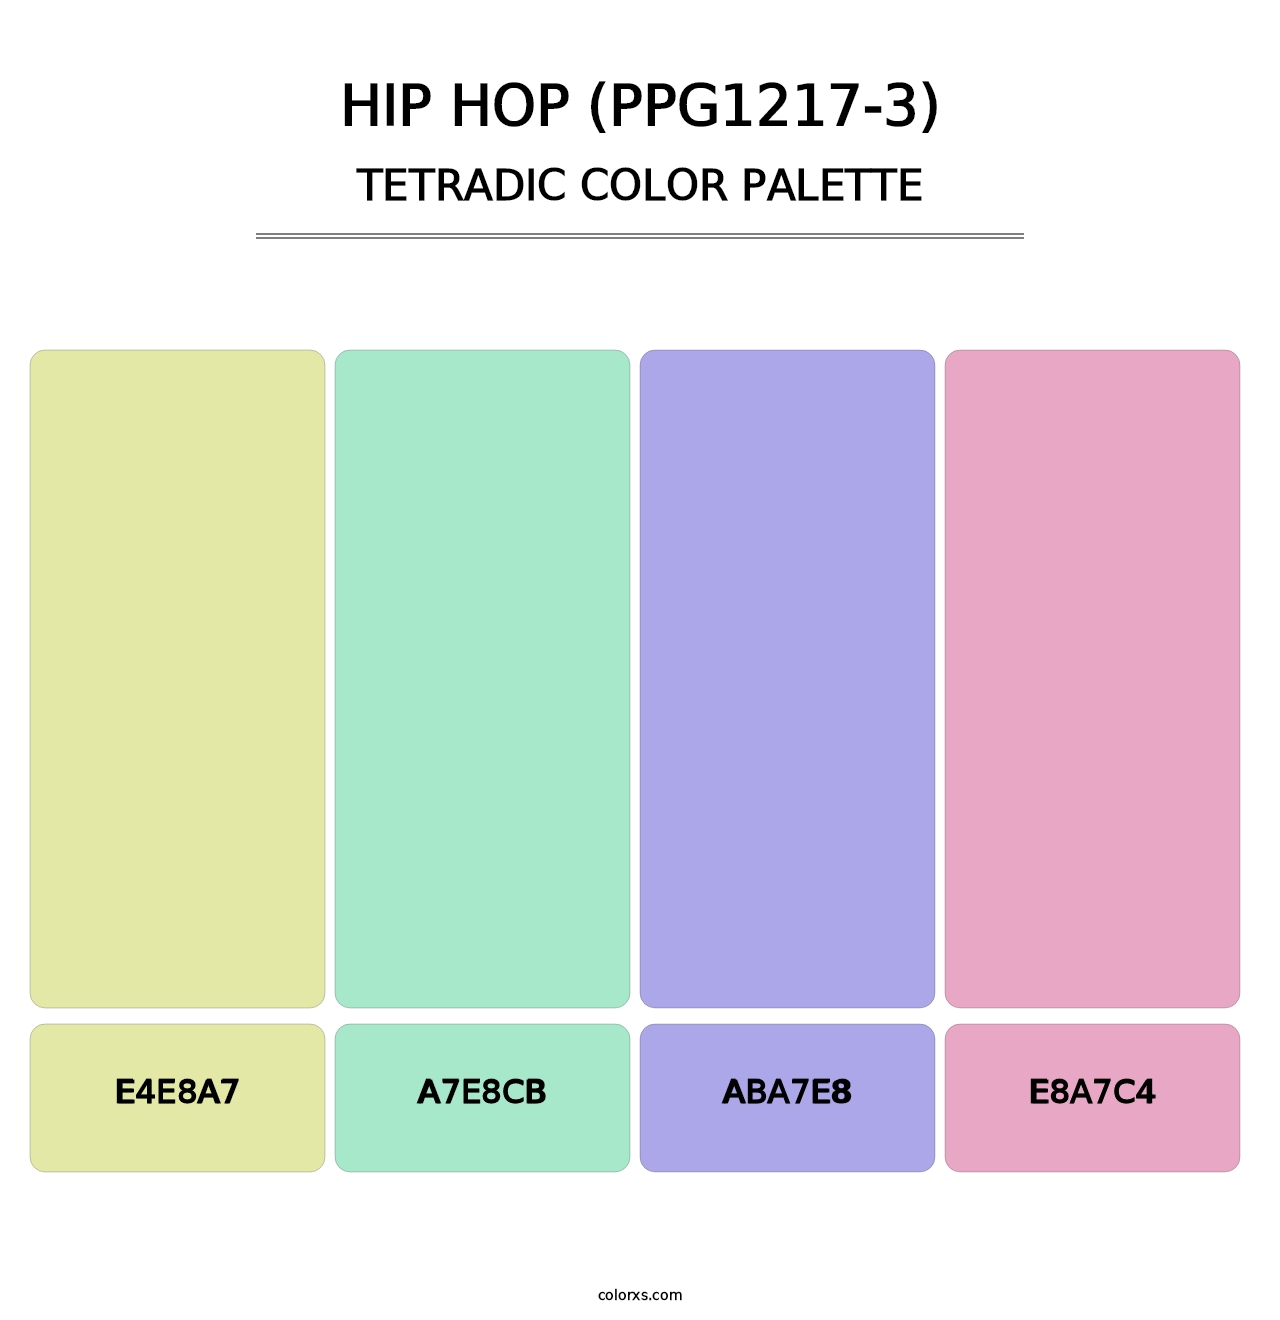 Hip Hop (PPG1217-3) - Tetradic Color Palette